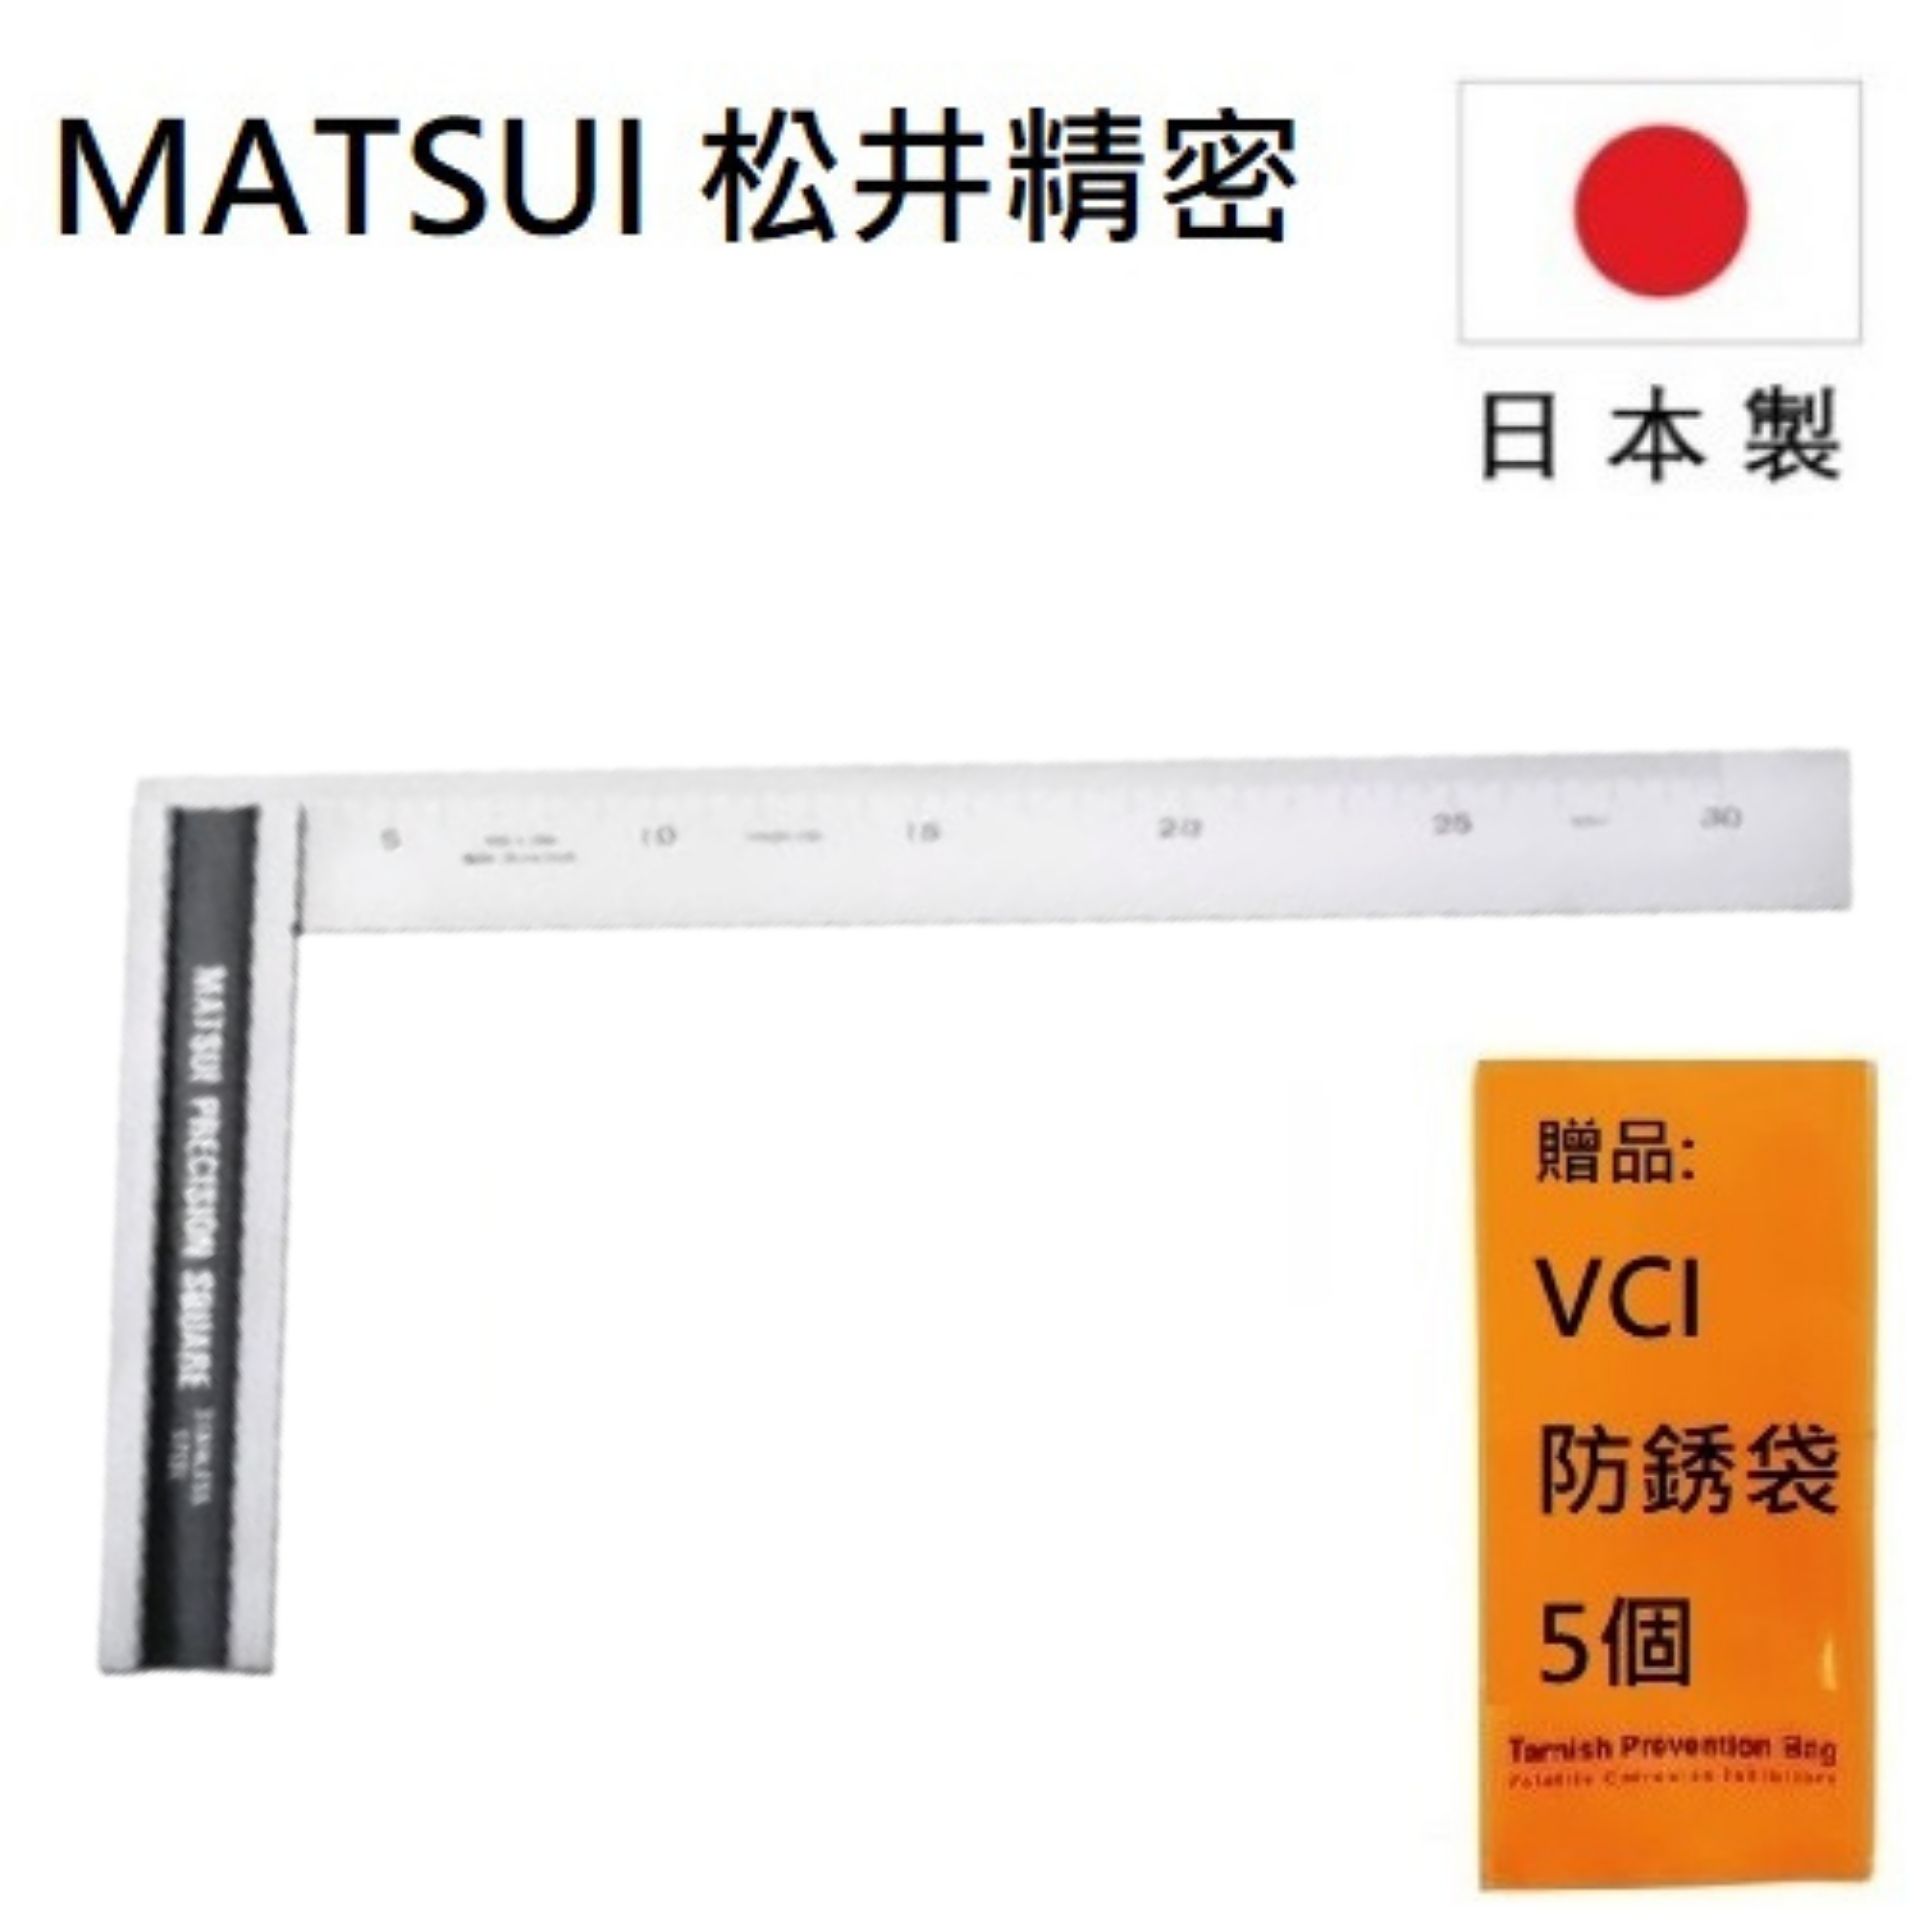 【MATSUI 松井精密】直角規 100mm(附刻度), SM-10 直角尺表面鍍鉻，精緻且強硬